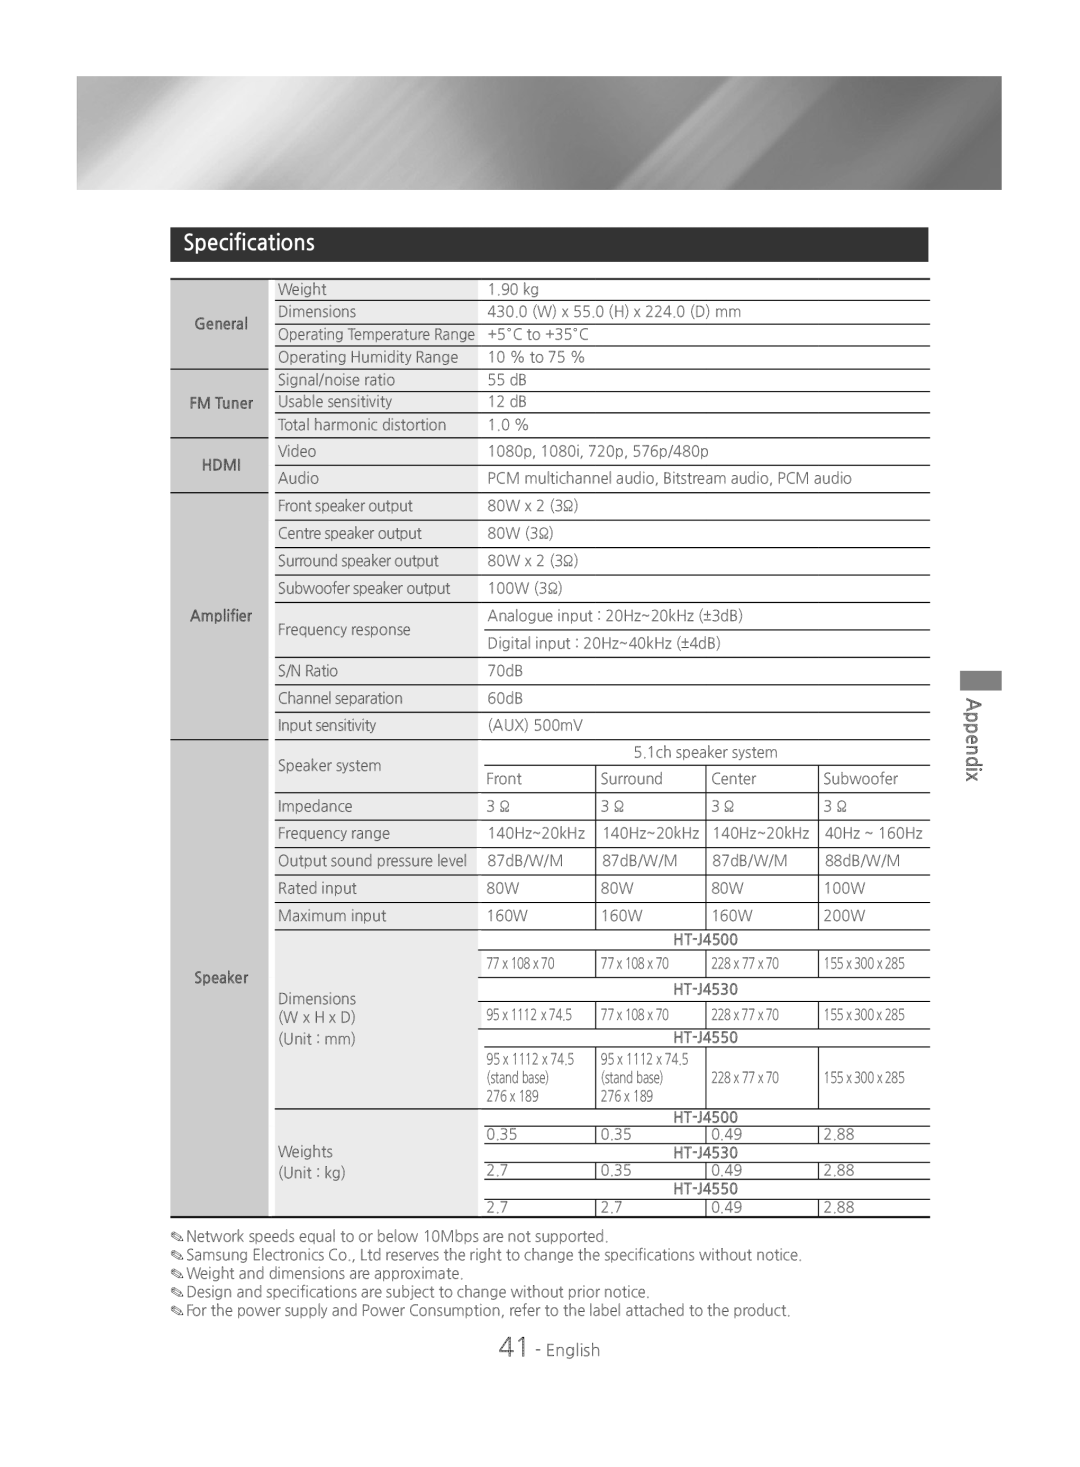 Samsung HT-J4500/EN, HT-J4550/EN, HT-J4530/EN manual Specifications, Appendix, English 